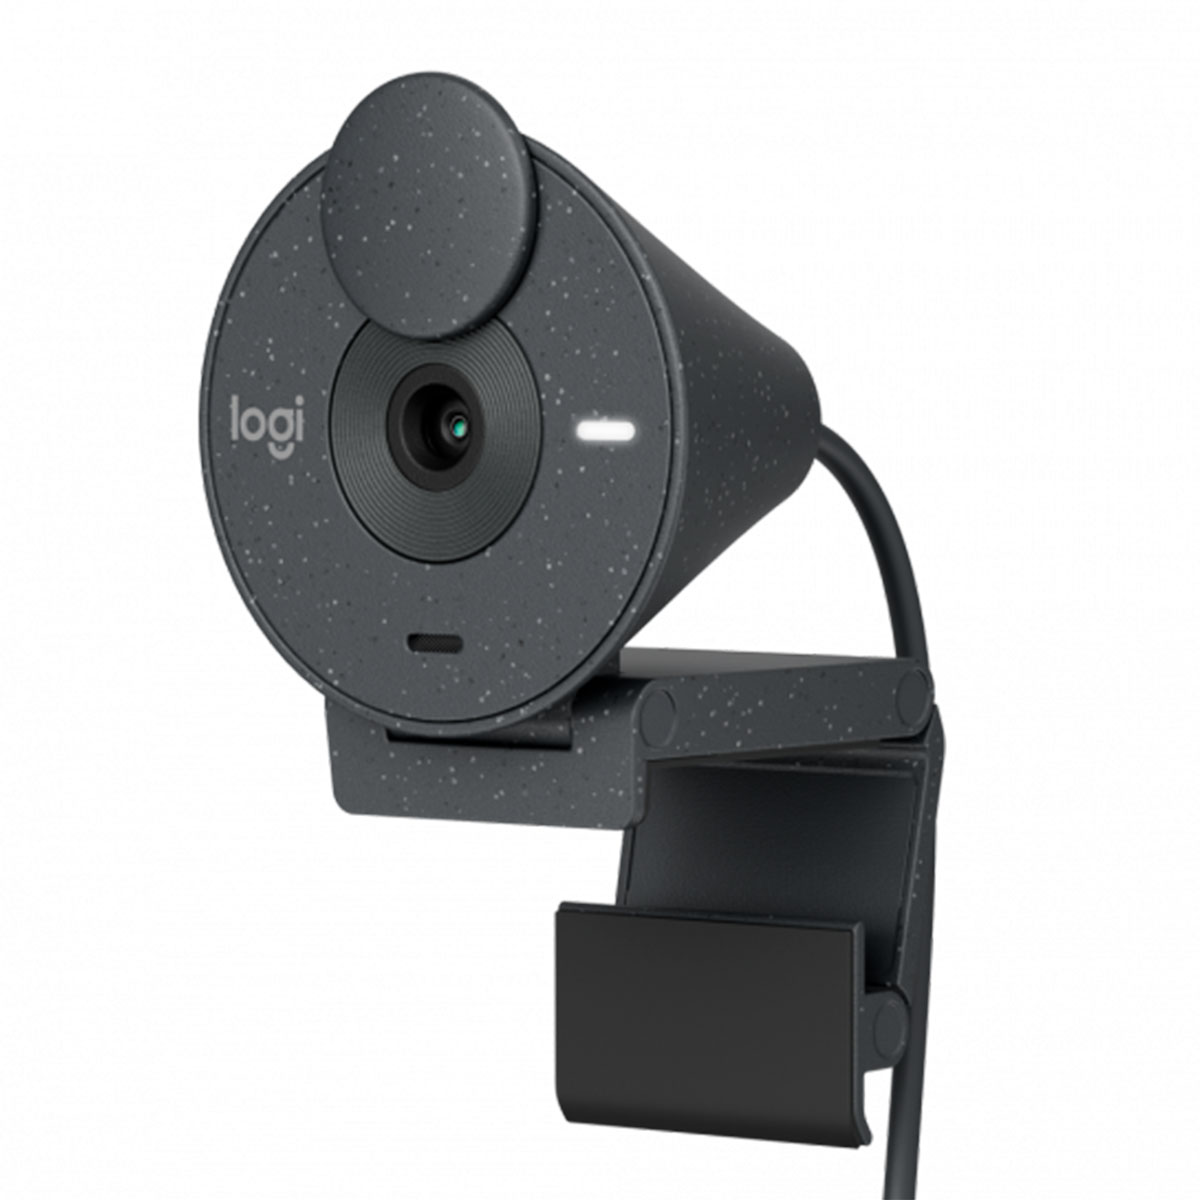 Web Câmera Logitech Brio 300 - Videochamada e Gravações em Full HD - Grafite - 960-001413